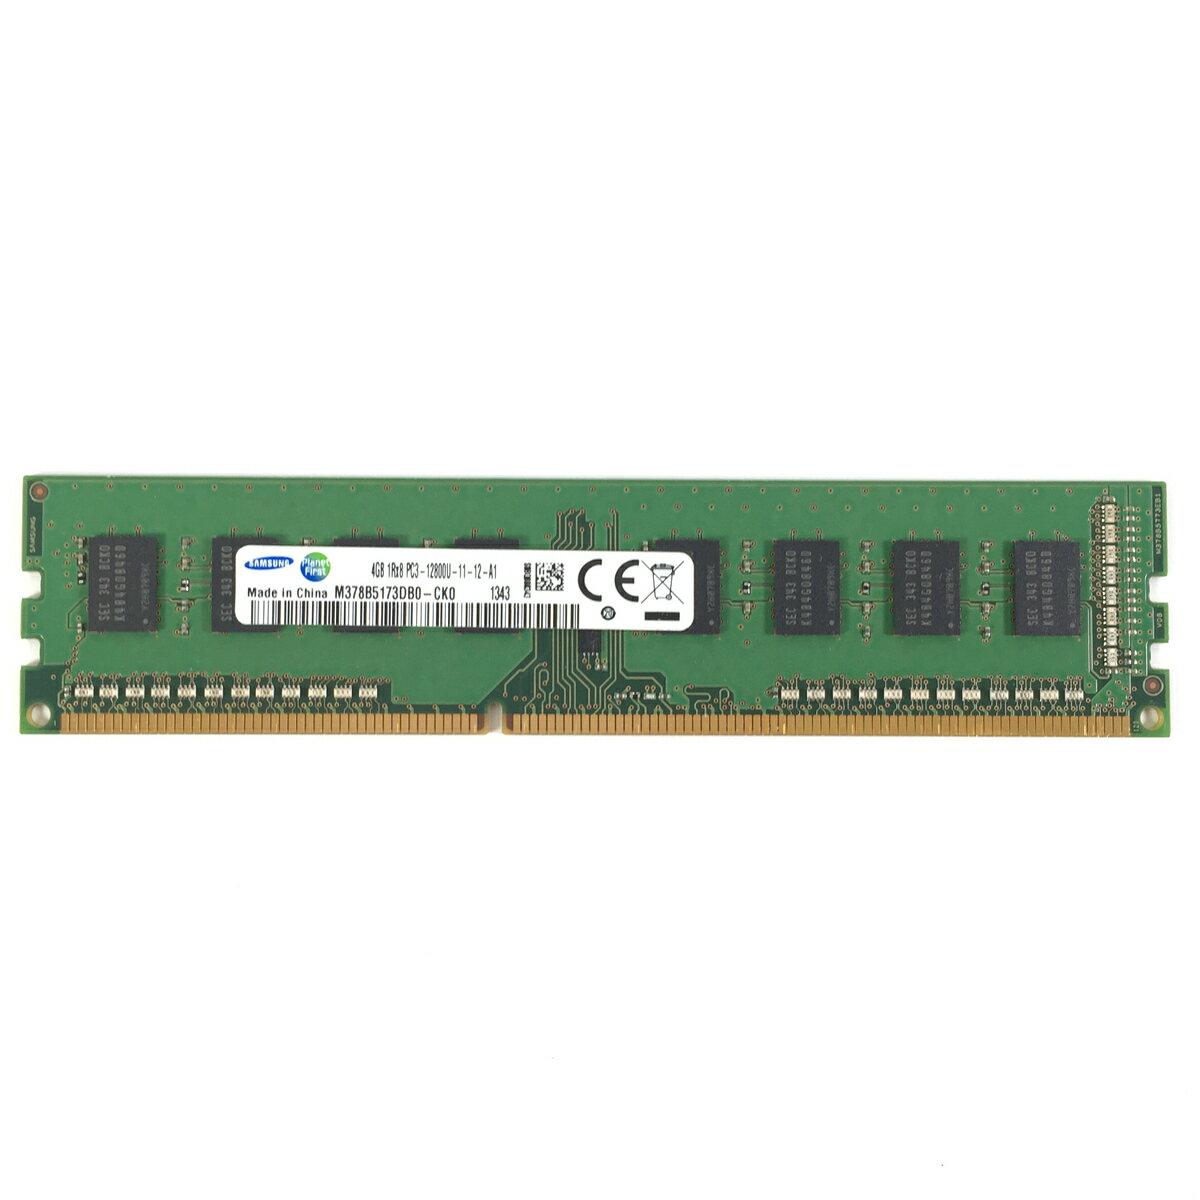 【新品】Samsung 4GB PC3-12800U 1600MHz DDR3 SDRAM デスクトップメモリー M378B5173DB0-CK0